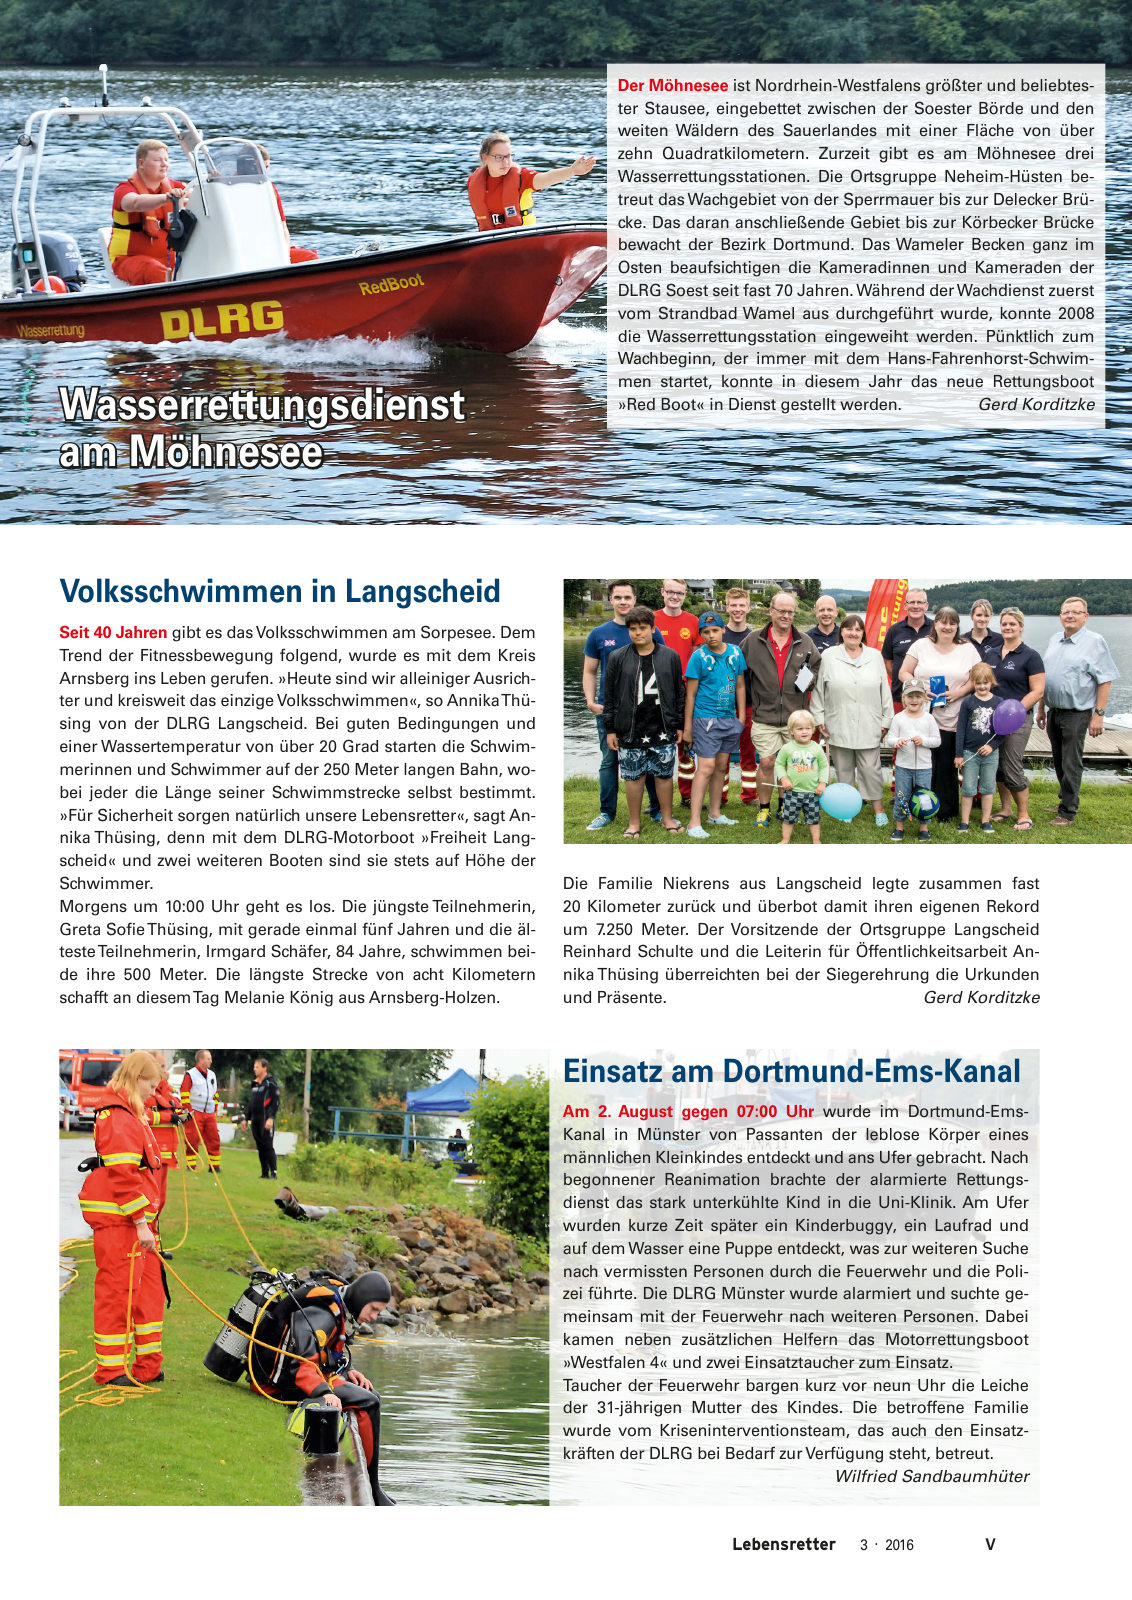 Vorschau Lebensretter 3/2016 - Regionalausgabe Westfalen Seite 7